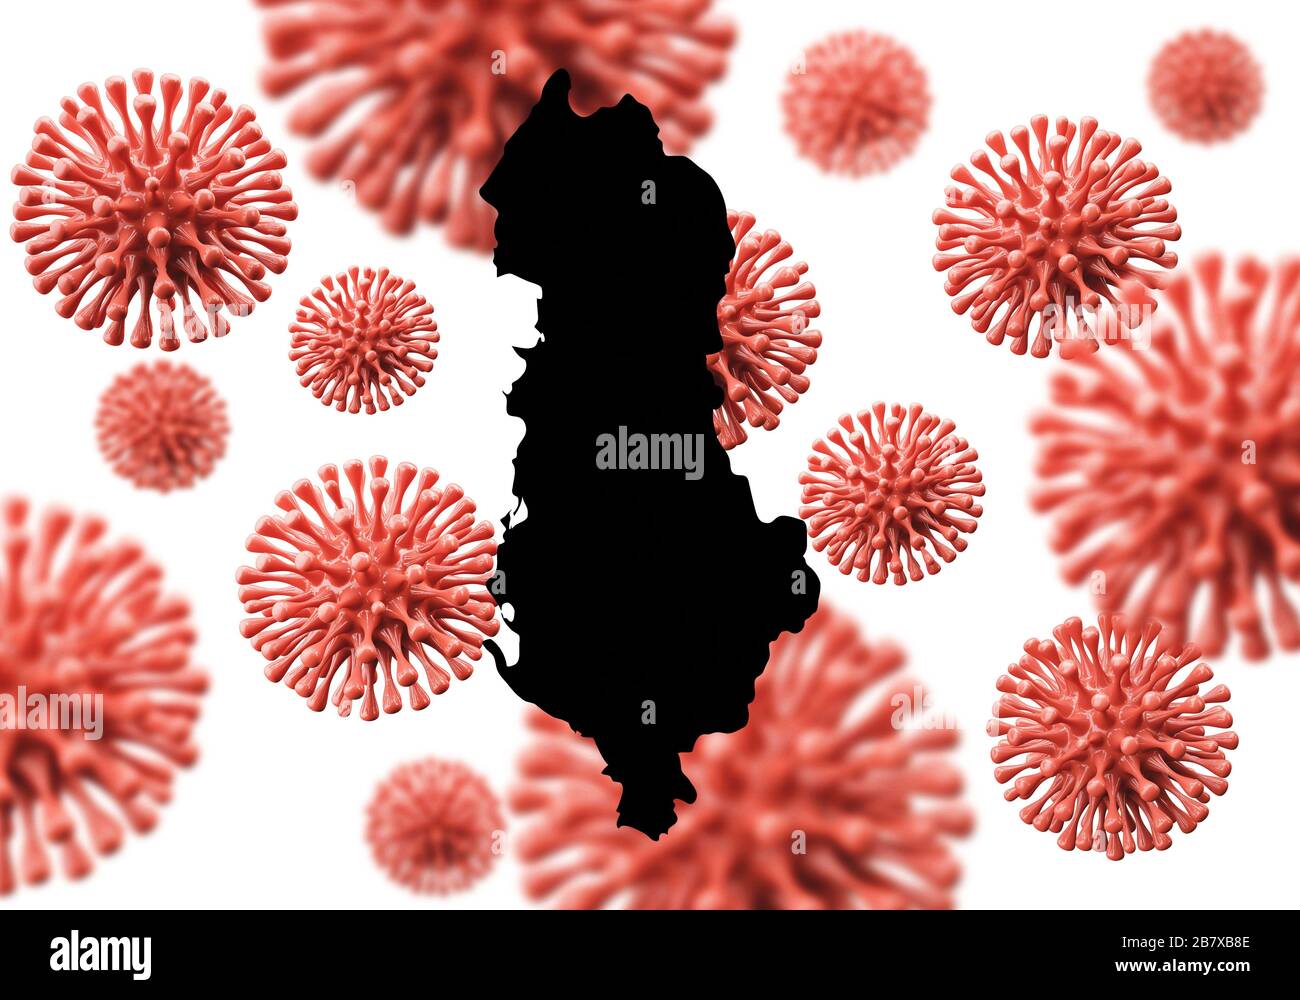 Albanie carte sur un fond microbe de virus scientifique. Rendu 3D Banque D'Images